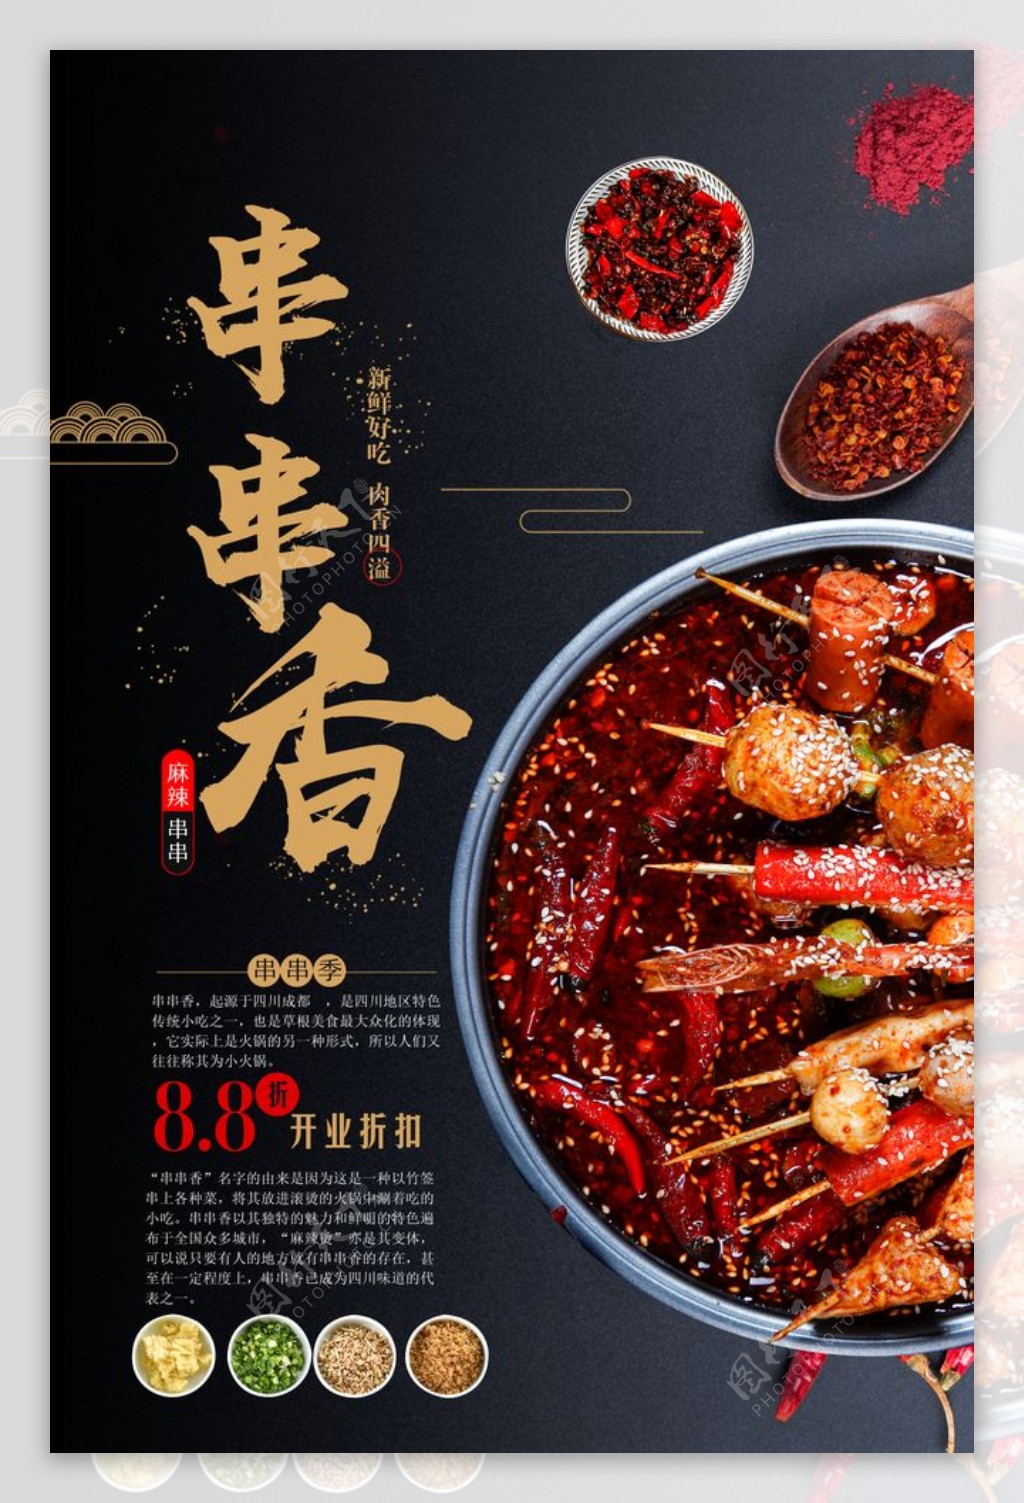 串串香美食食材活动海报素材图片